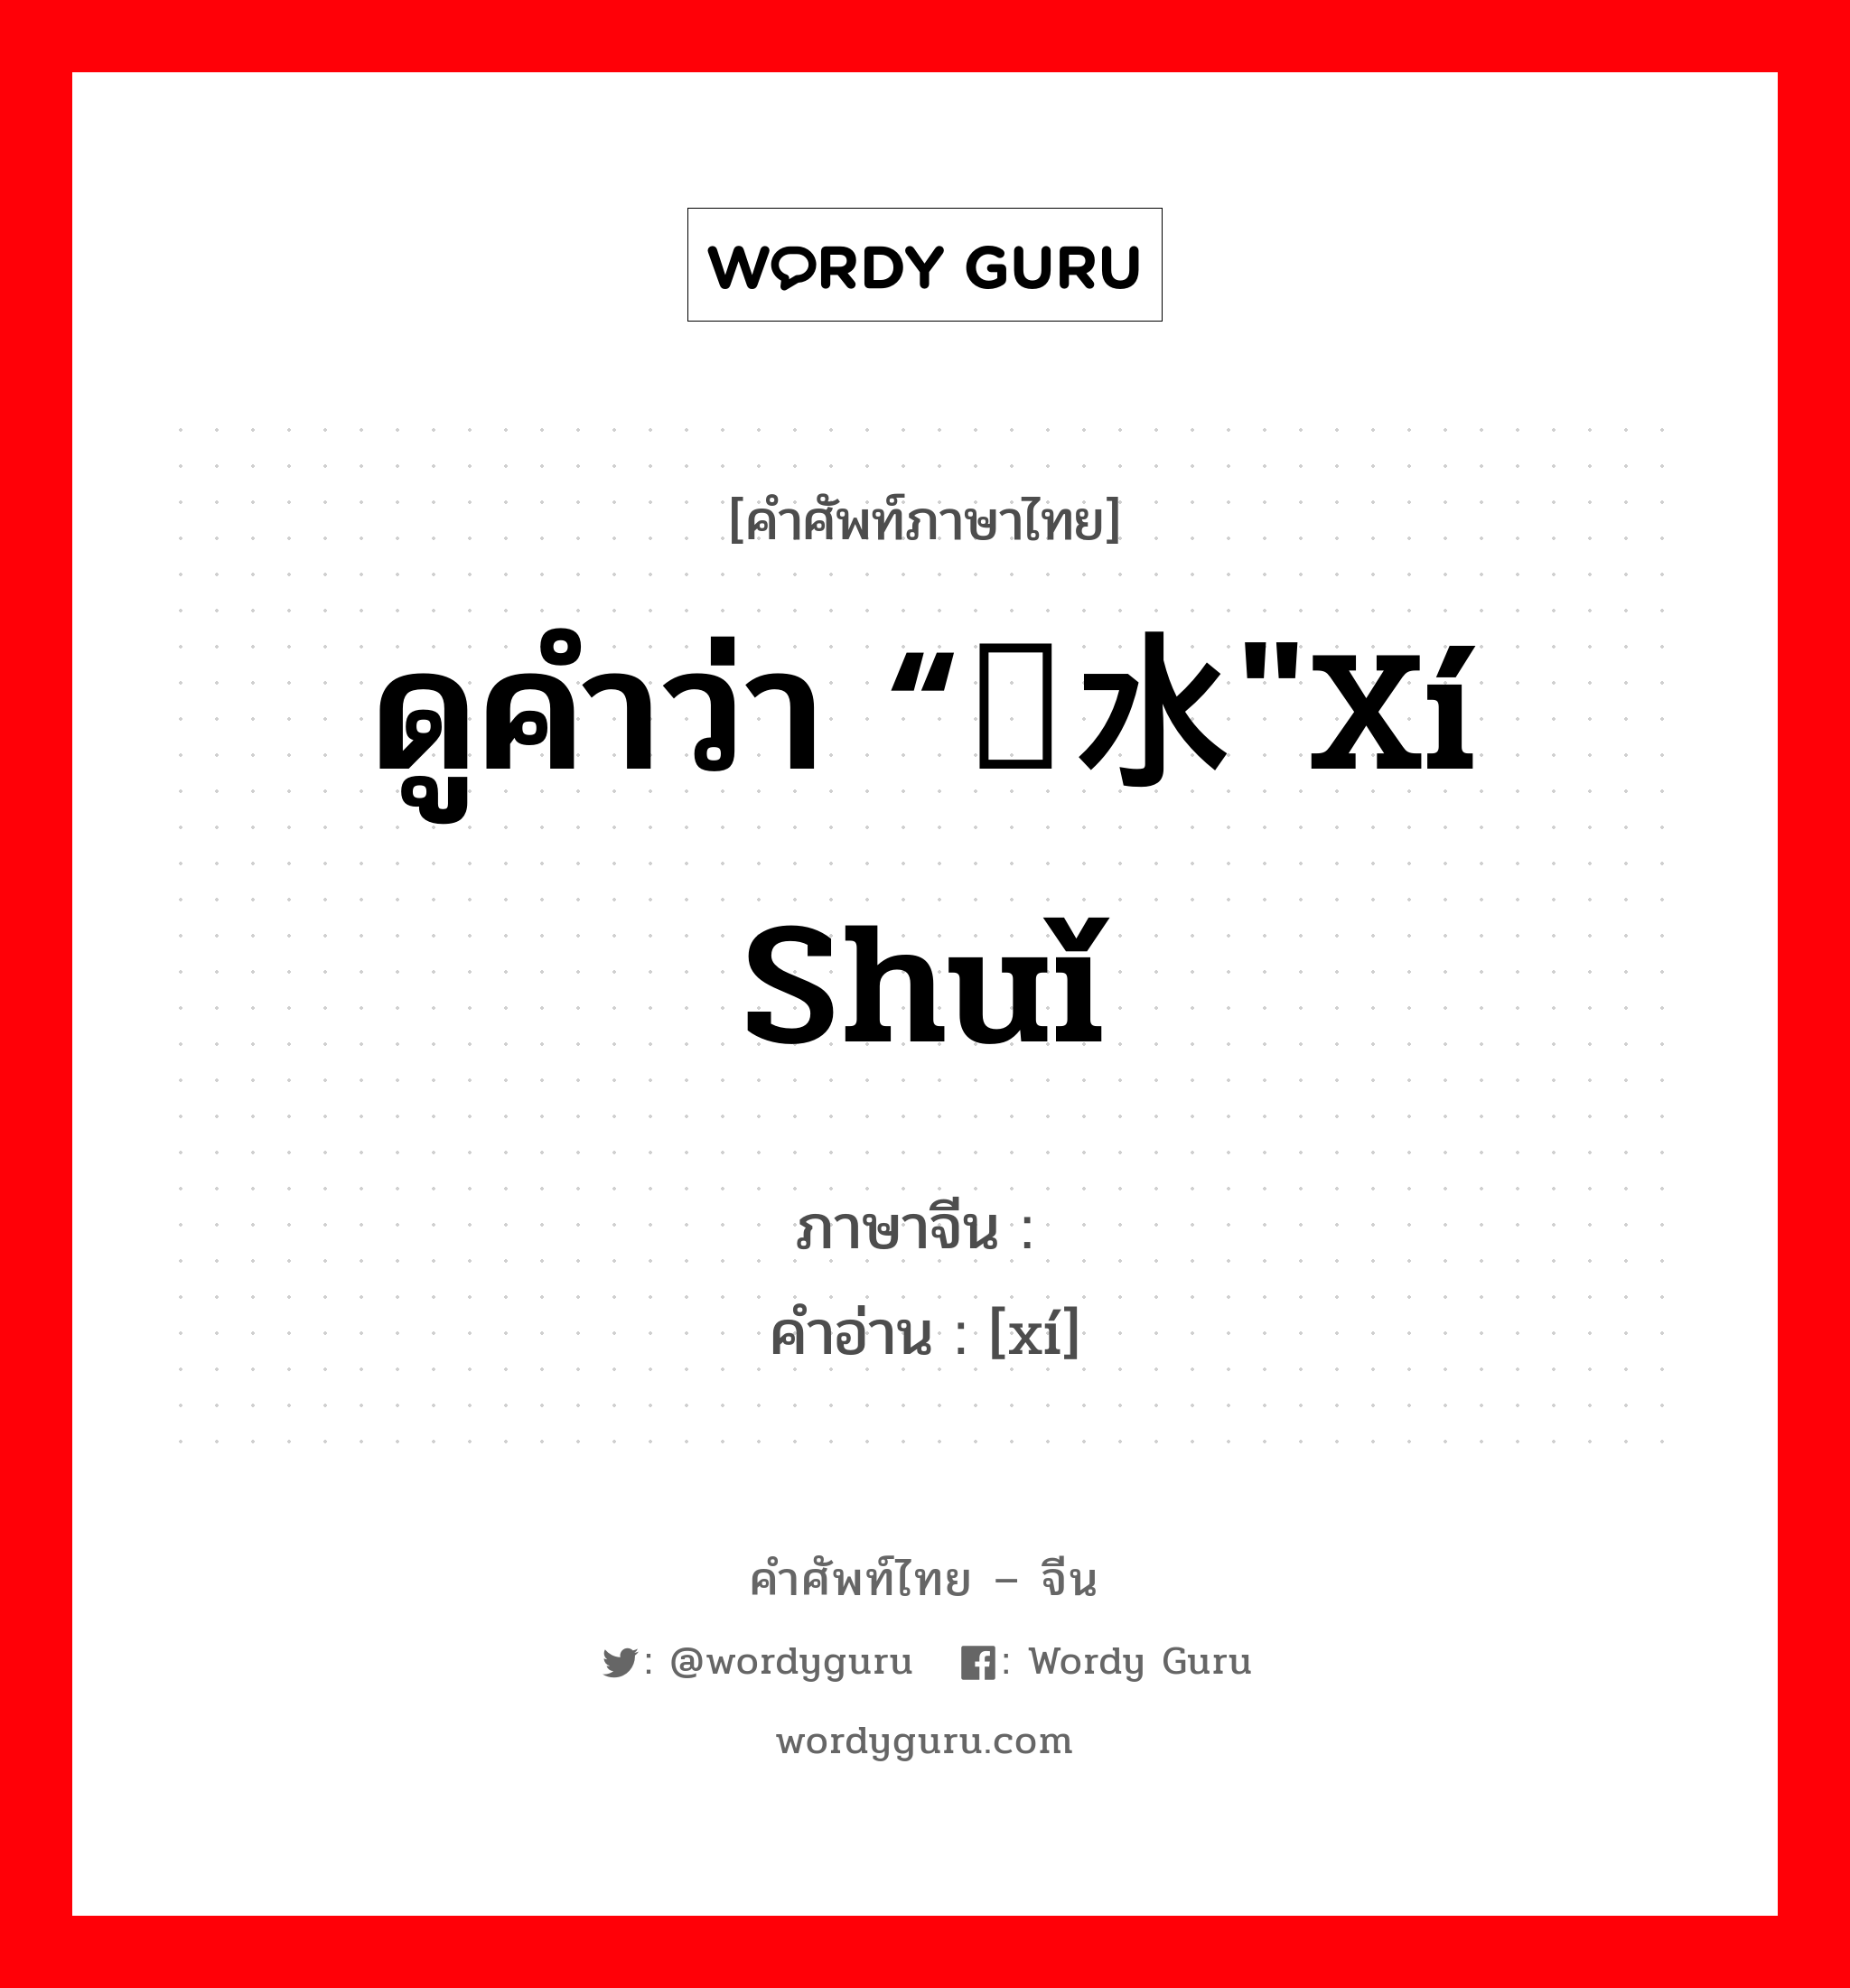 ดูคำว่า “鳛水"xí shuǐ ภาษาจีนคืออะไร, คำศัพท์ภาษาไทย - จีน ดูคำว่า “鳛水"xí shuǐ ภาษาจีน 鳛 คำอ่าน [xí]